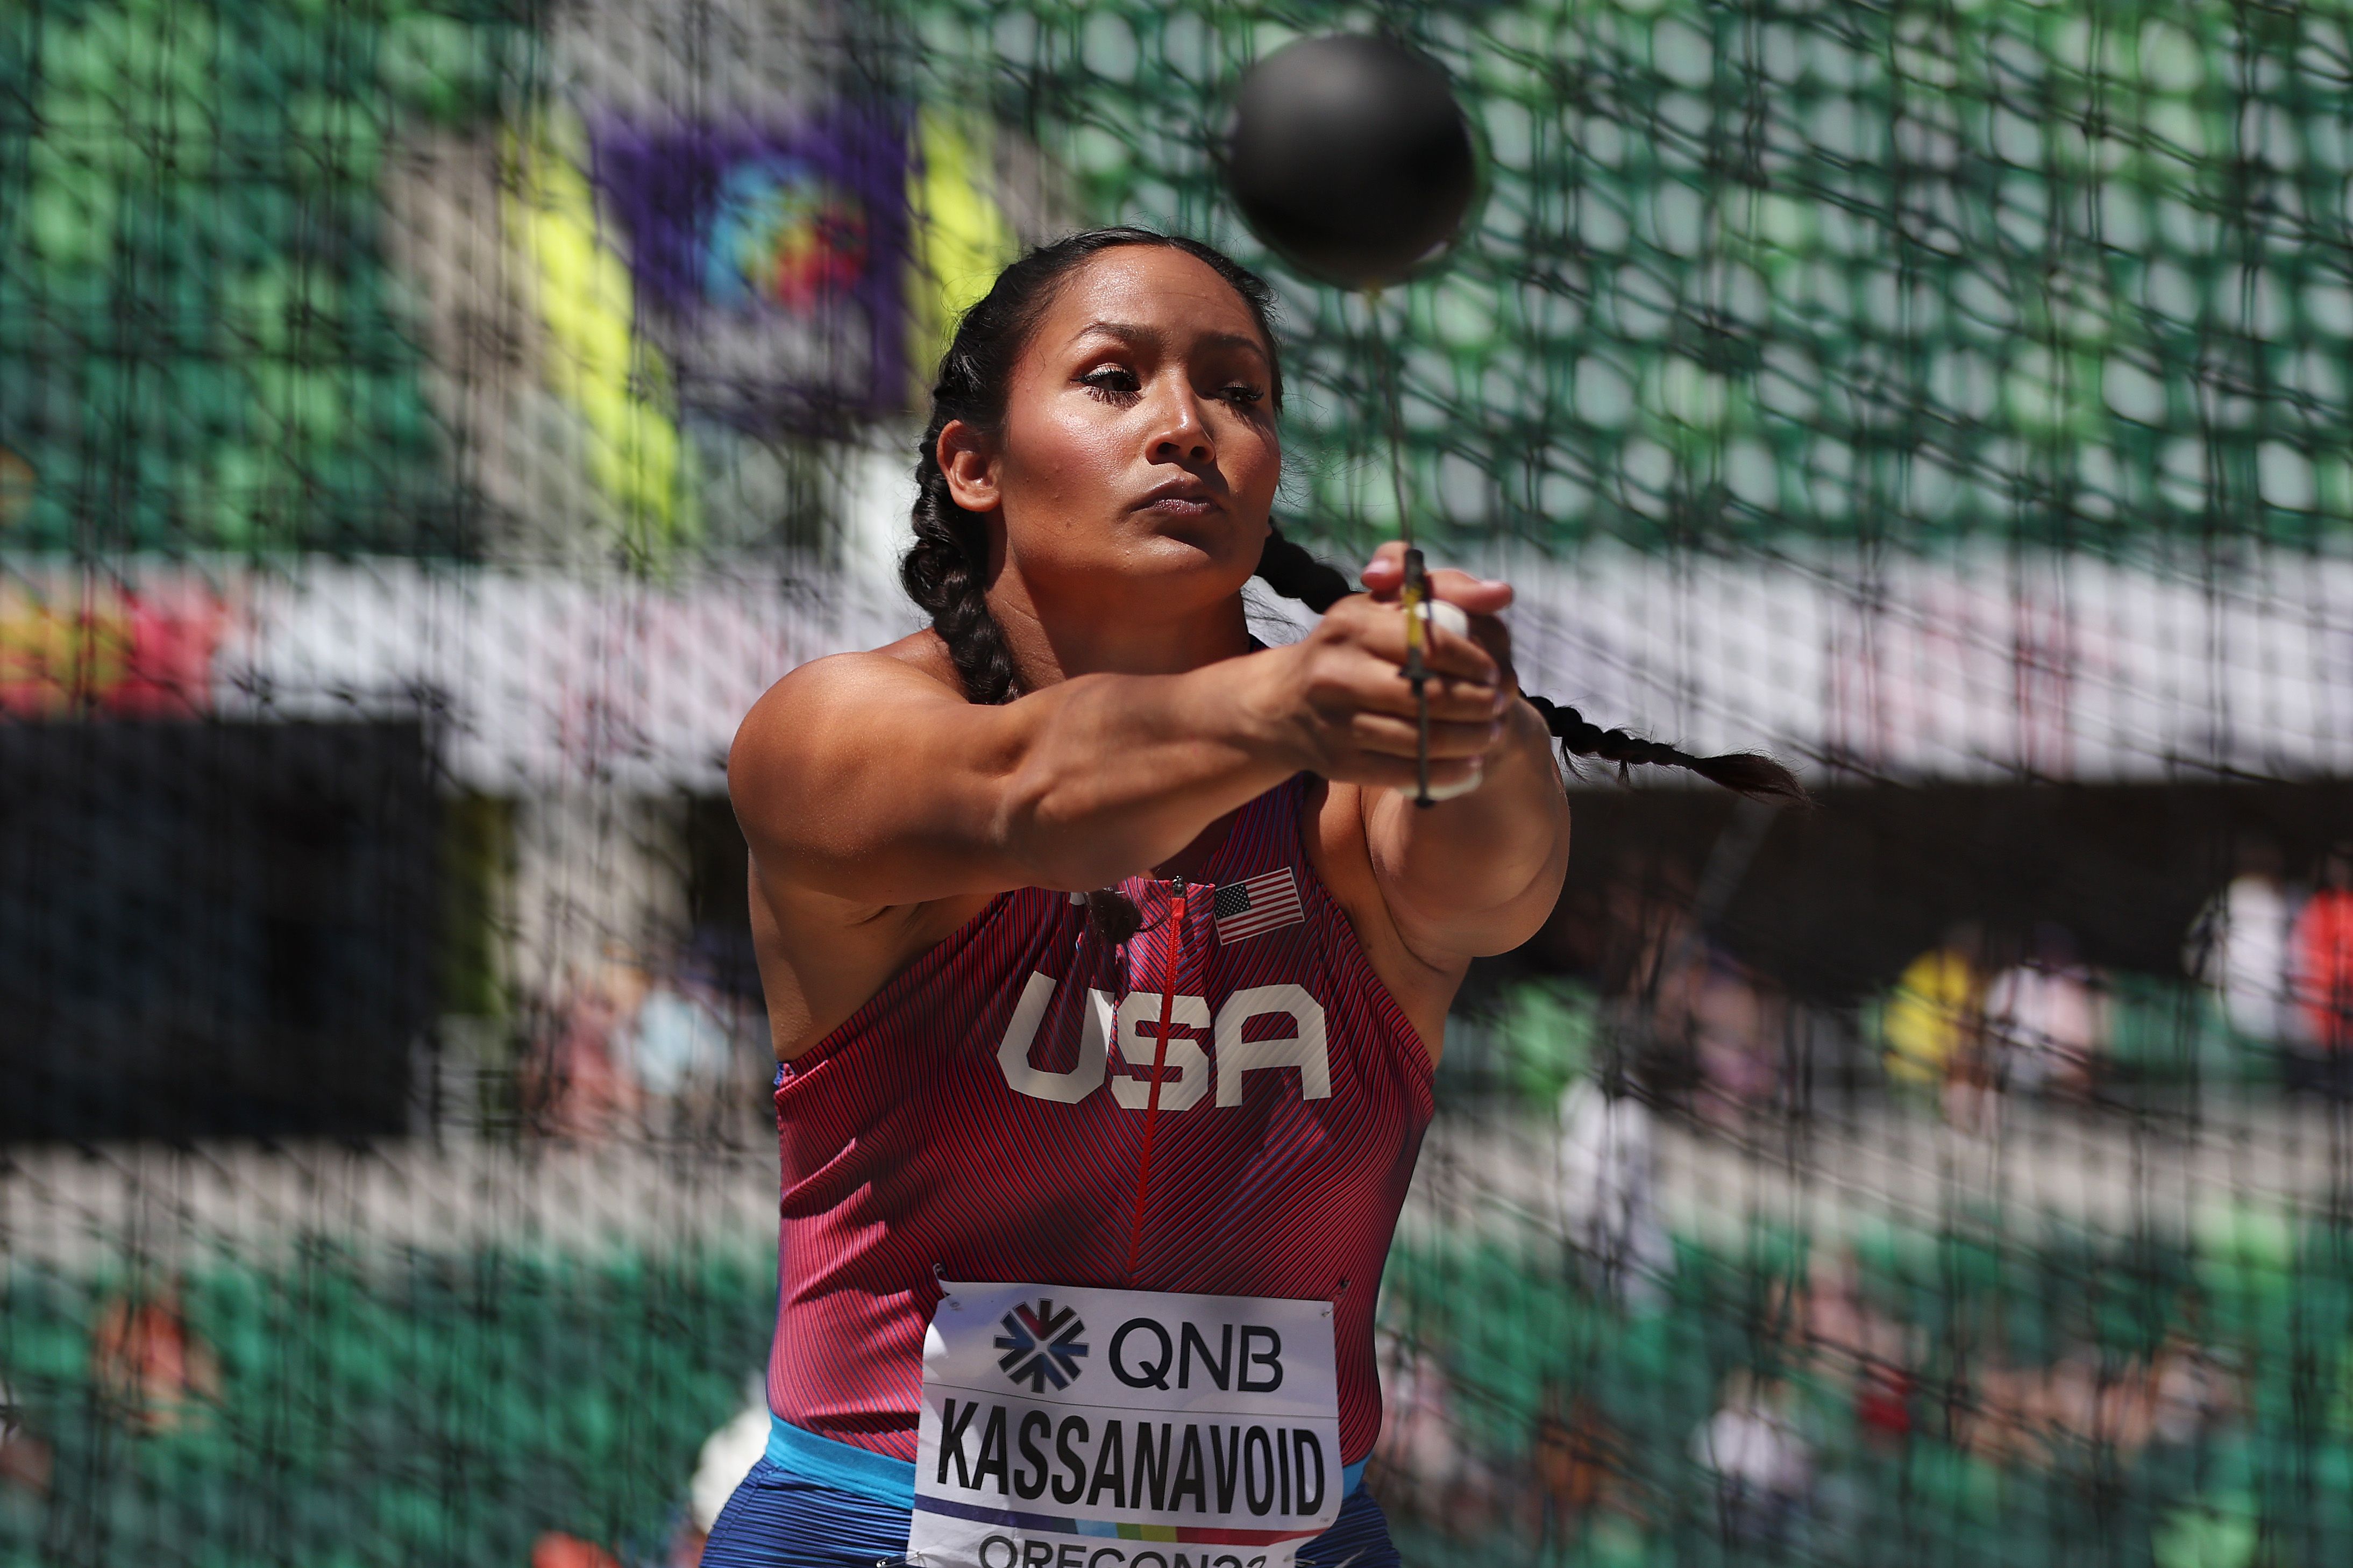 Janee Kassanavoid at the World Athletics Championships Oregon22